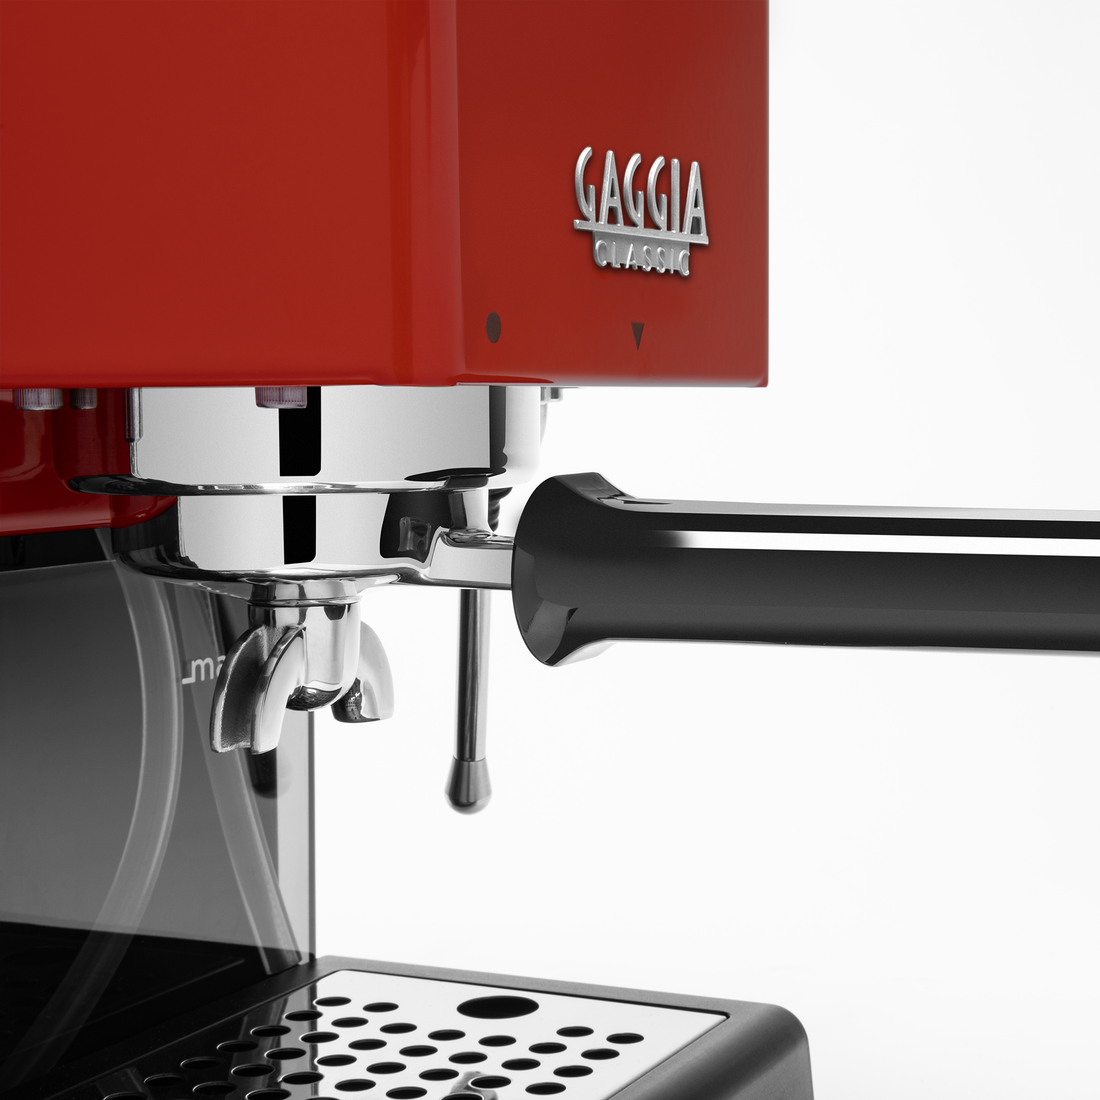 Gaggia Classic Evo Pro Espresso Machine in Cherry Red with Tiger Maple